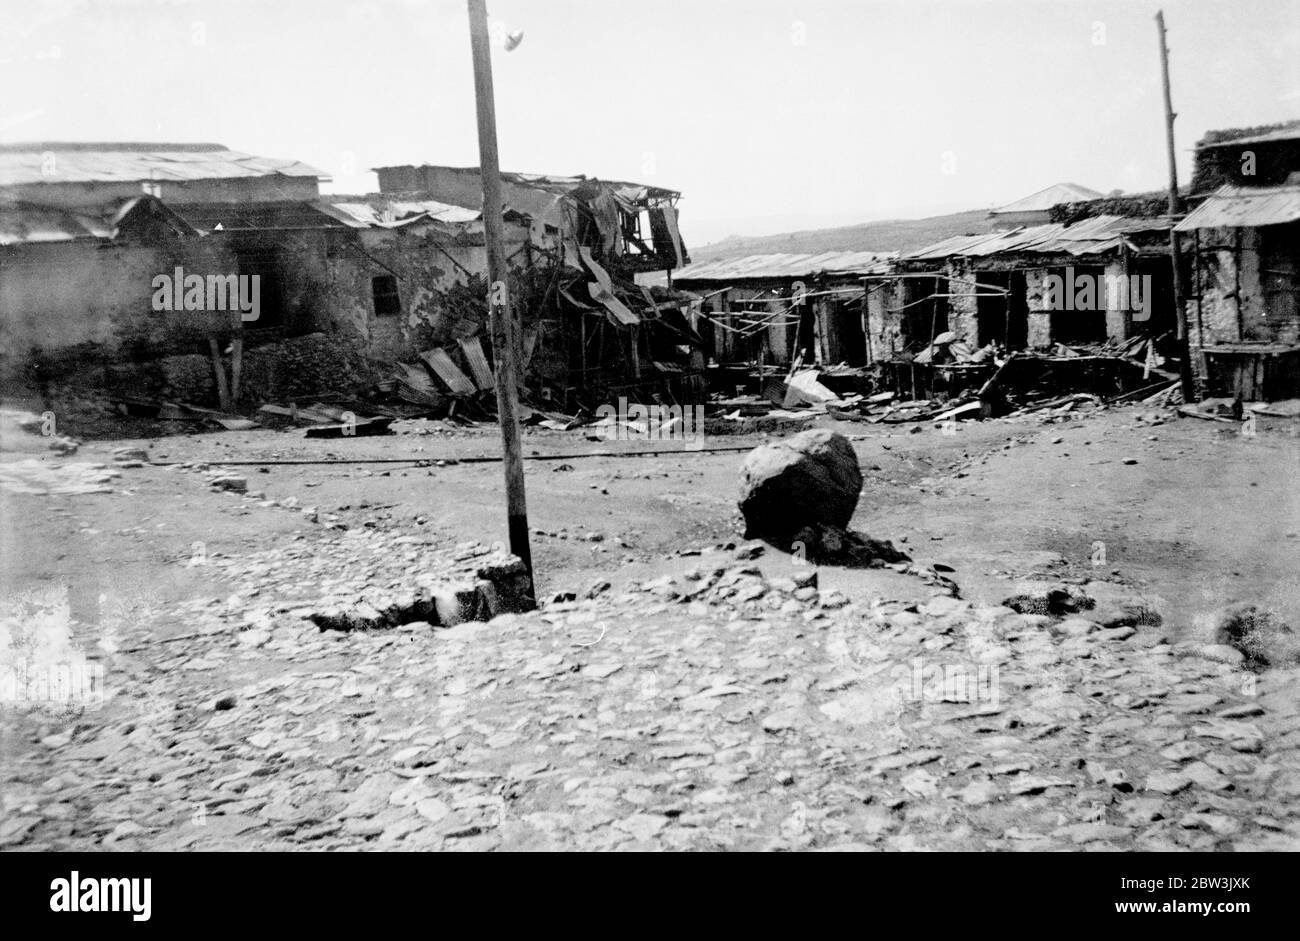 Harar eine zerstörte und verwüsterte Stadt, wartet Besetzung durch Italien. Harar, die zweite Stadt von Abessinien durch wiederholte Luftangriffe und Gasangriffe verwüstet, präsentiert ein Bild der Verwüstung, wie es die Ankunft der Crazieni ' s eindringenden Armee aus dem Süden erwartet. Viele der wichtigsten Gebäude sind nach den wiederholten Bombenangriffen zerstört und unbewohnbar. Foto zeigt, das zerstörte Innere eines Hauses in harar bombardiert in der neuesten Luftangriff. 22. April 1936 Stockfoto